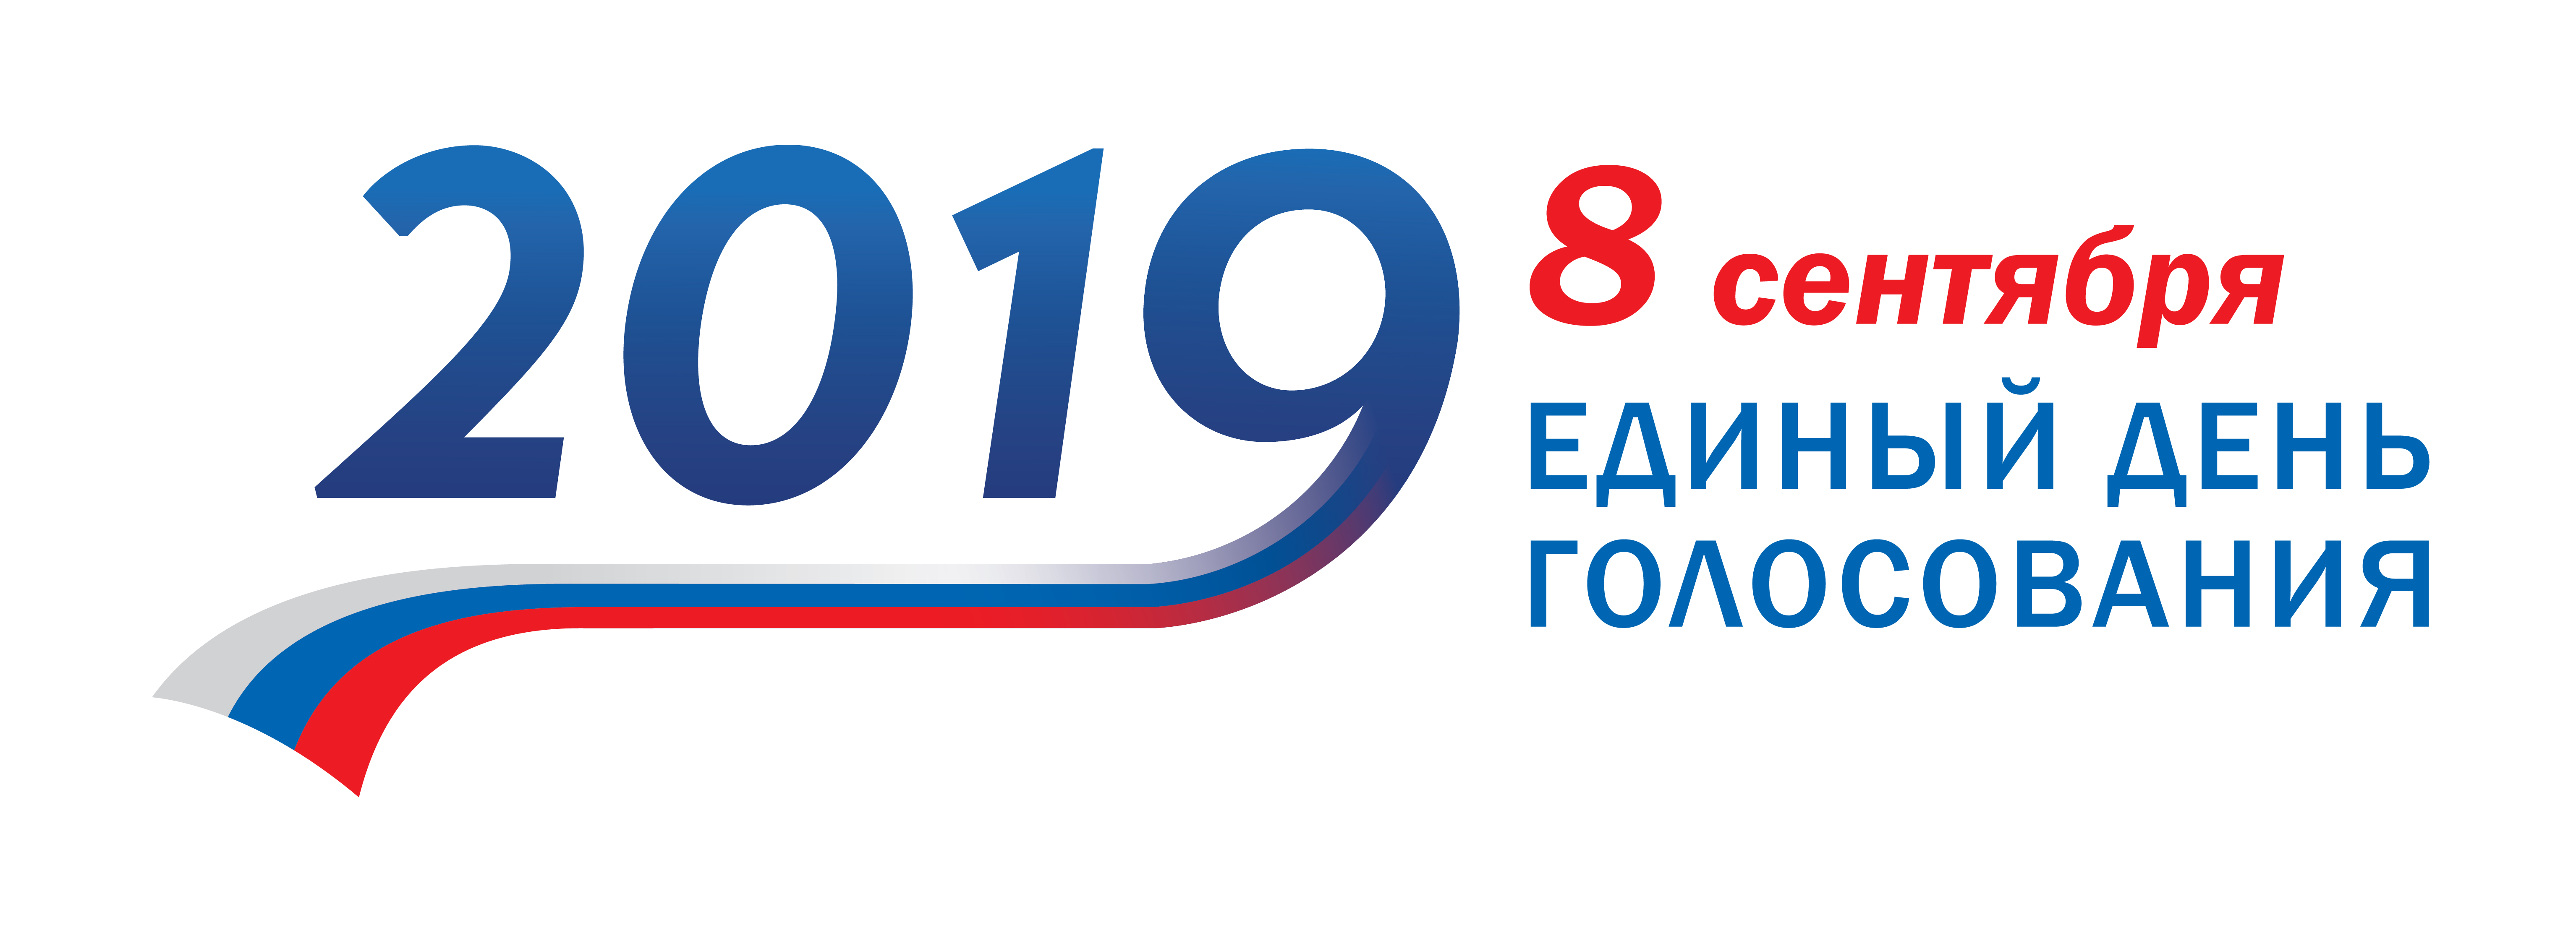 28 августа в Томском районе стартовало досрочное голосование